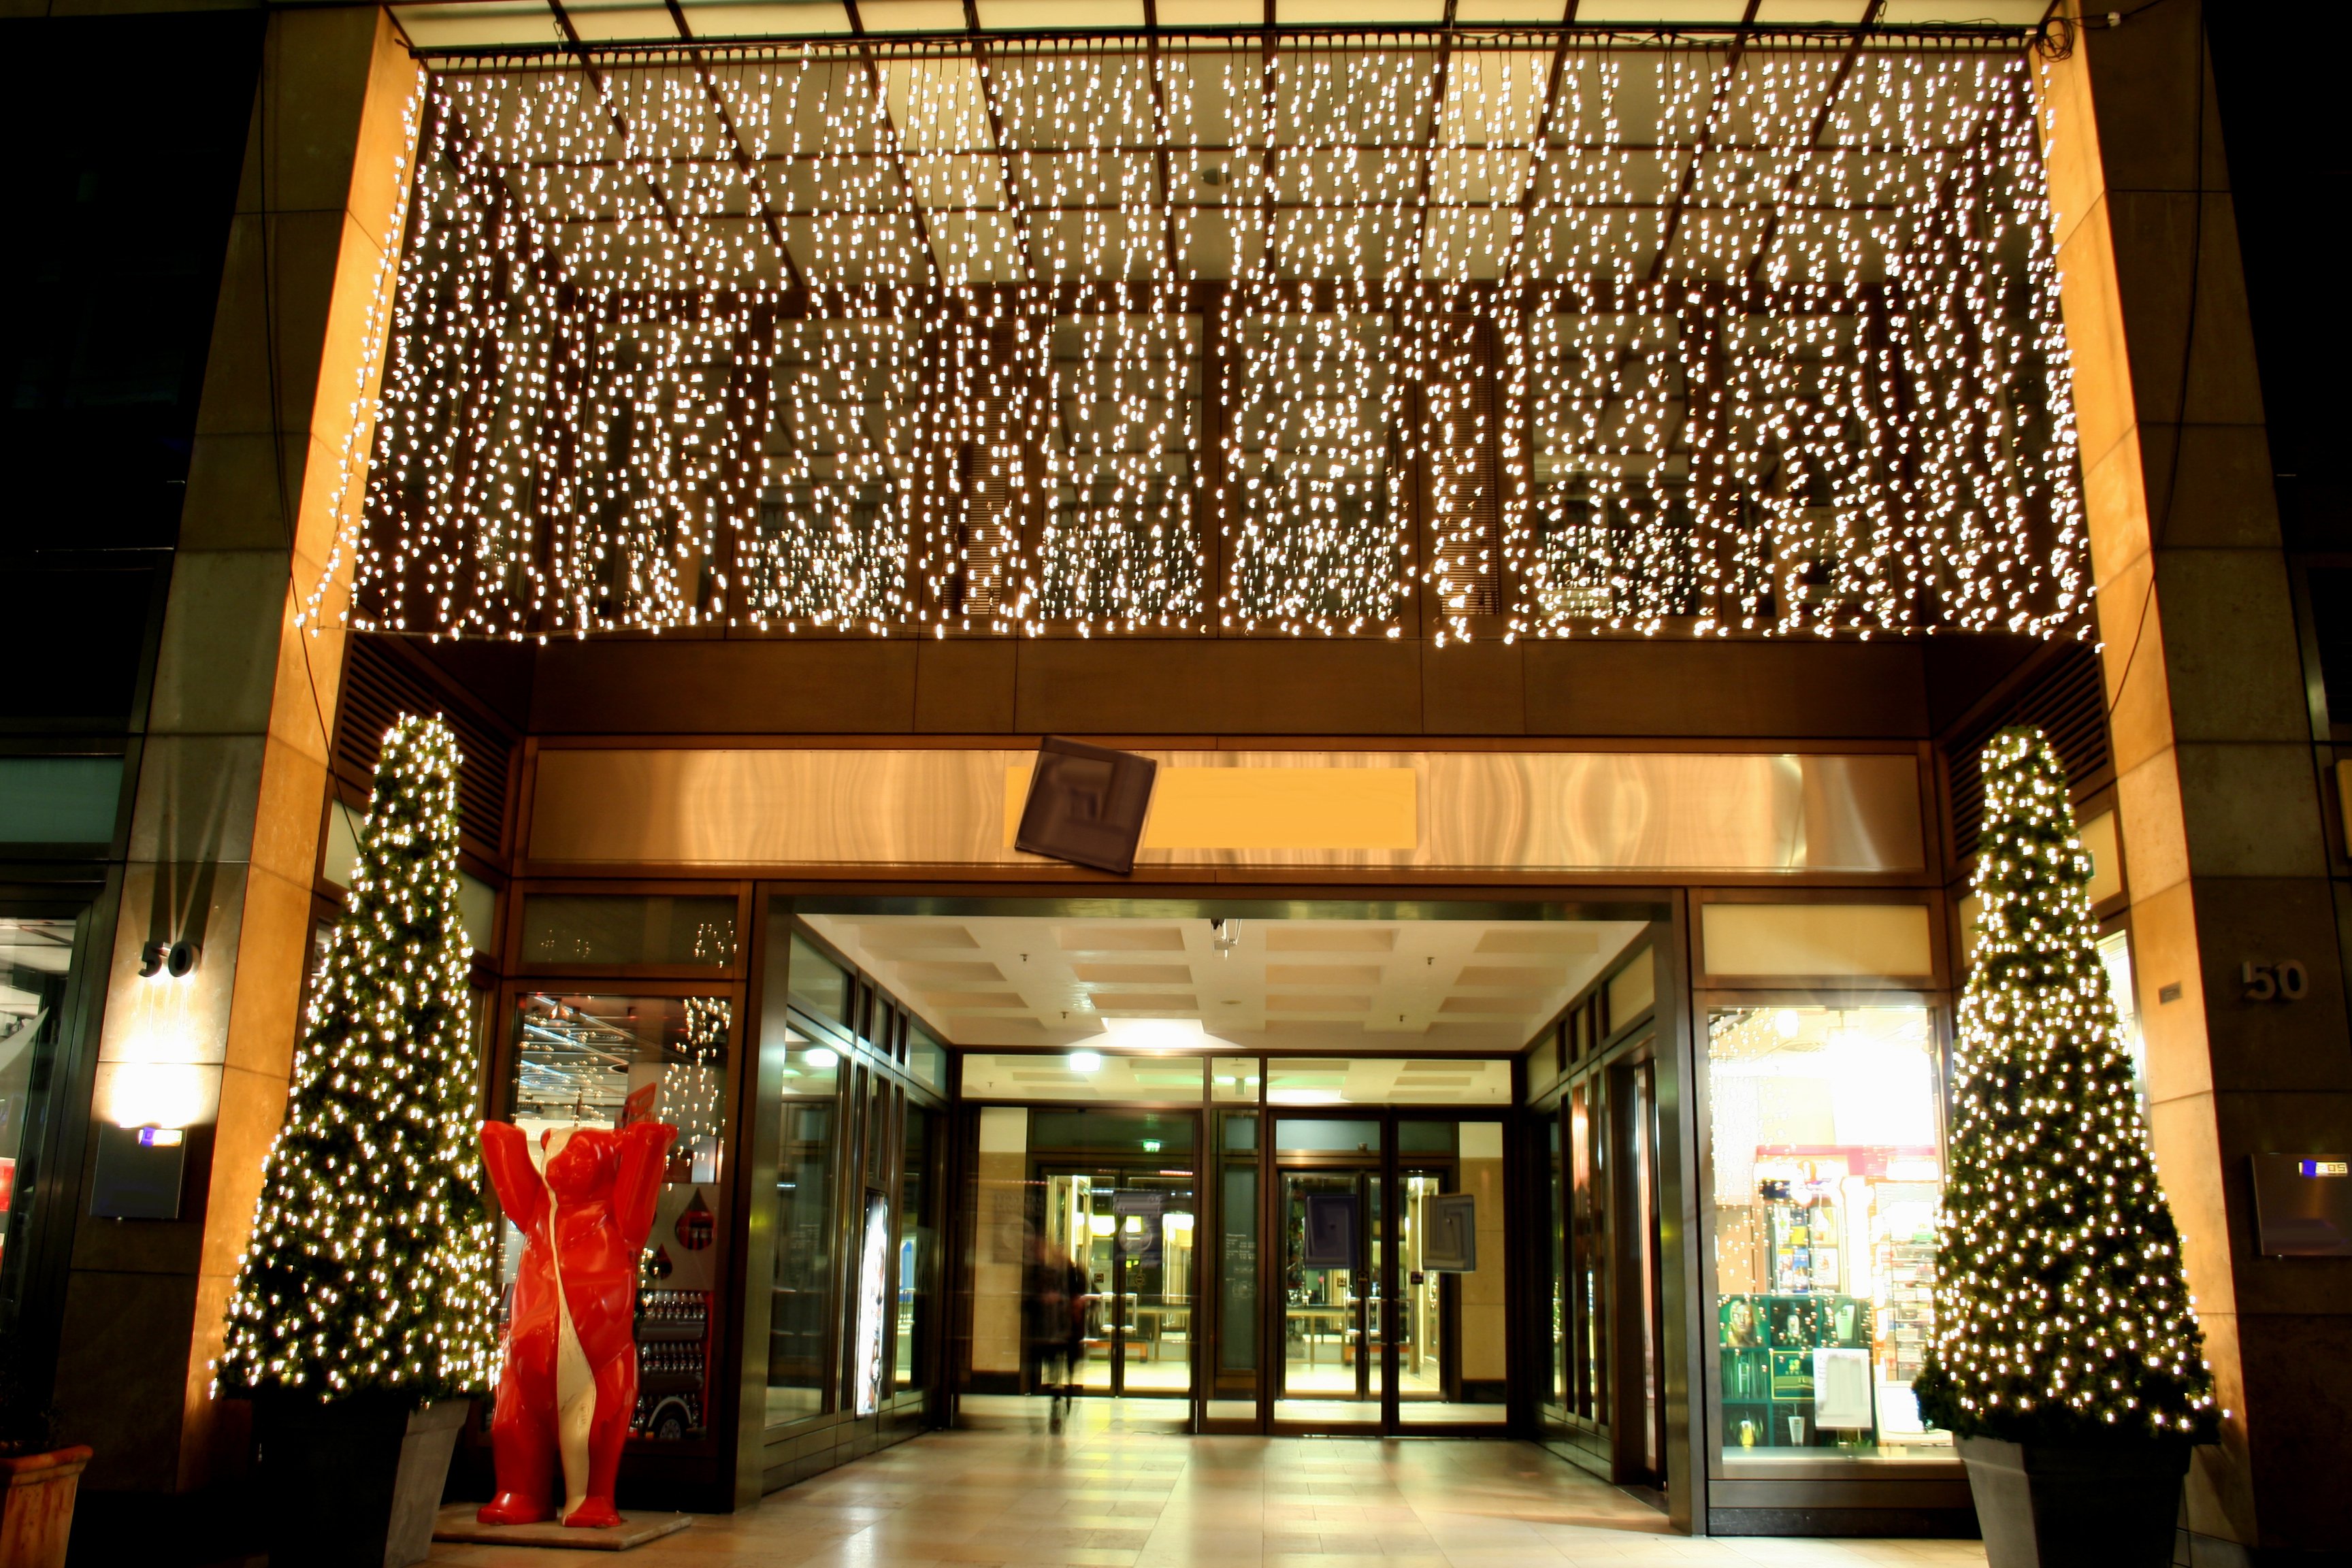 Centro comercial decorado para Navidad. | Foto: Shutterstock